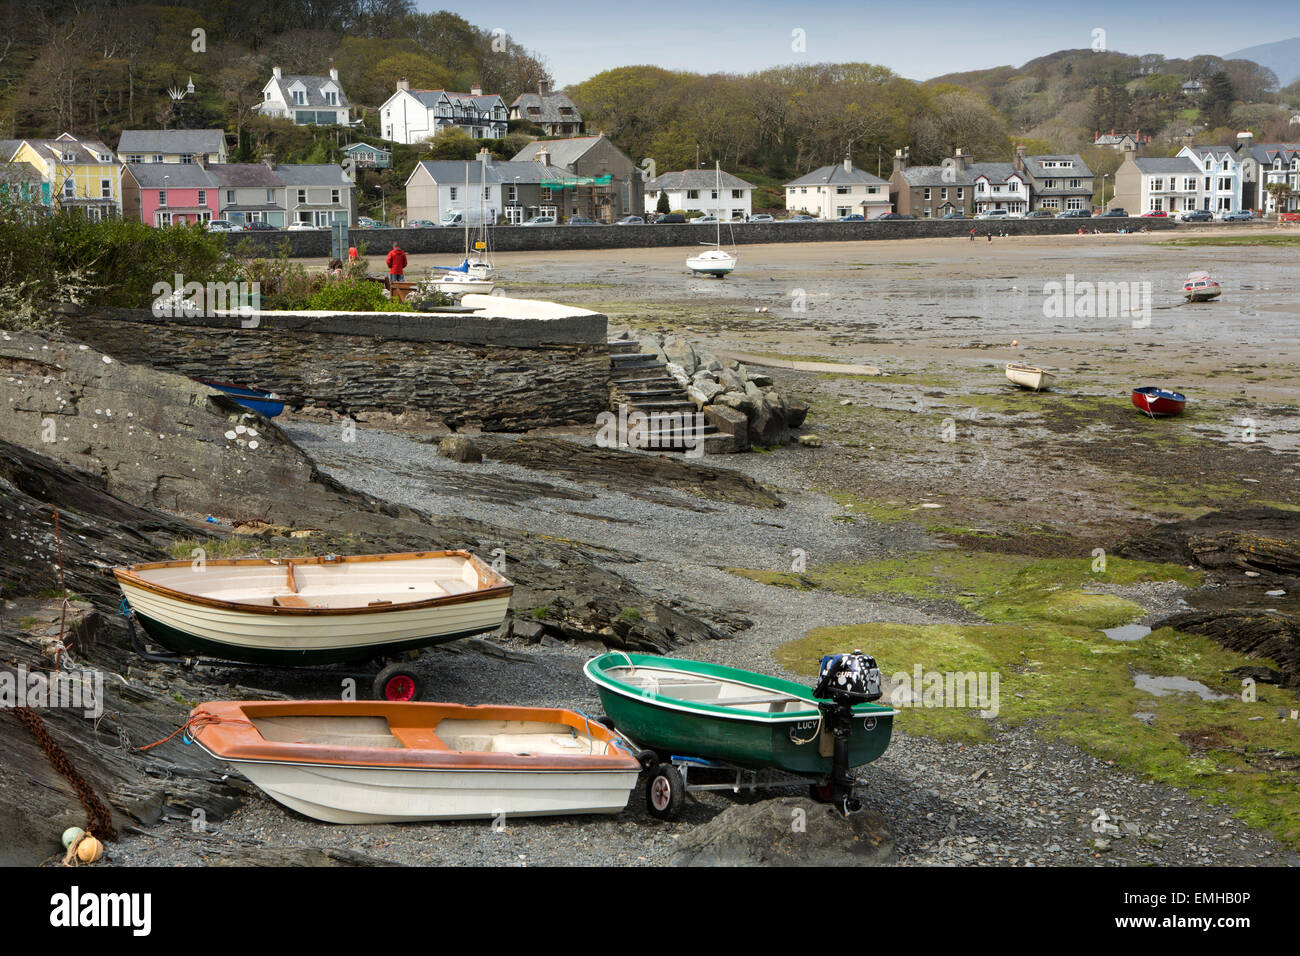 UK, Wales, Gwynedd, Porthmadog, Borth-Y-Gest, harbour at low tide Stock Photo